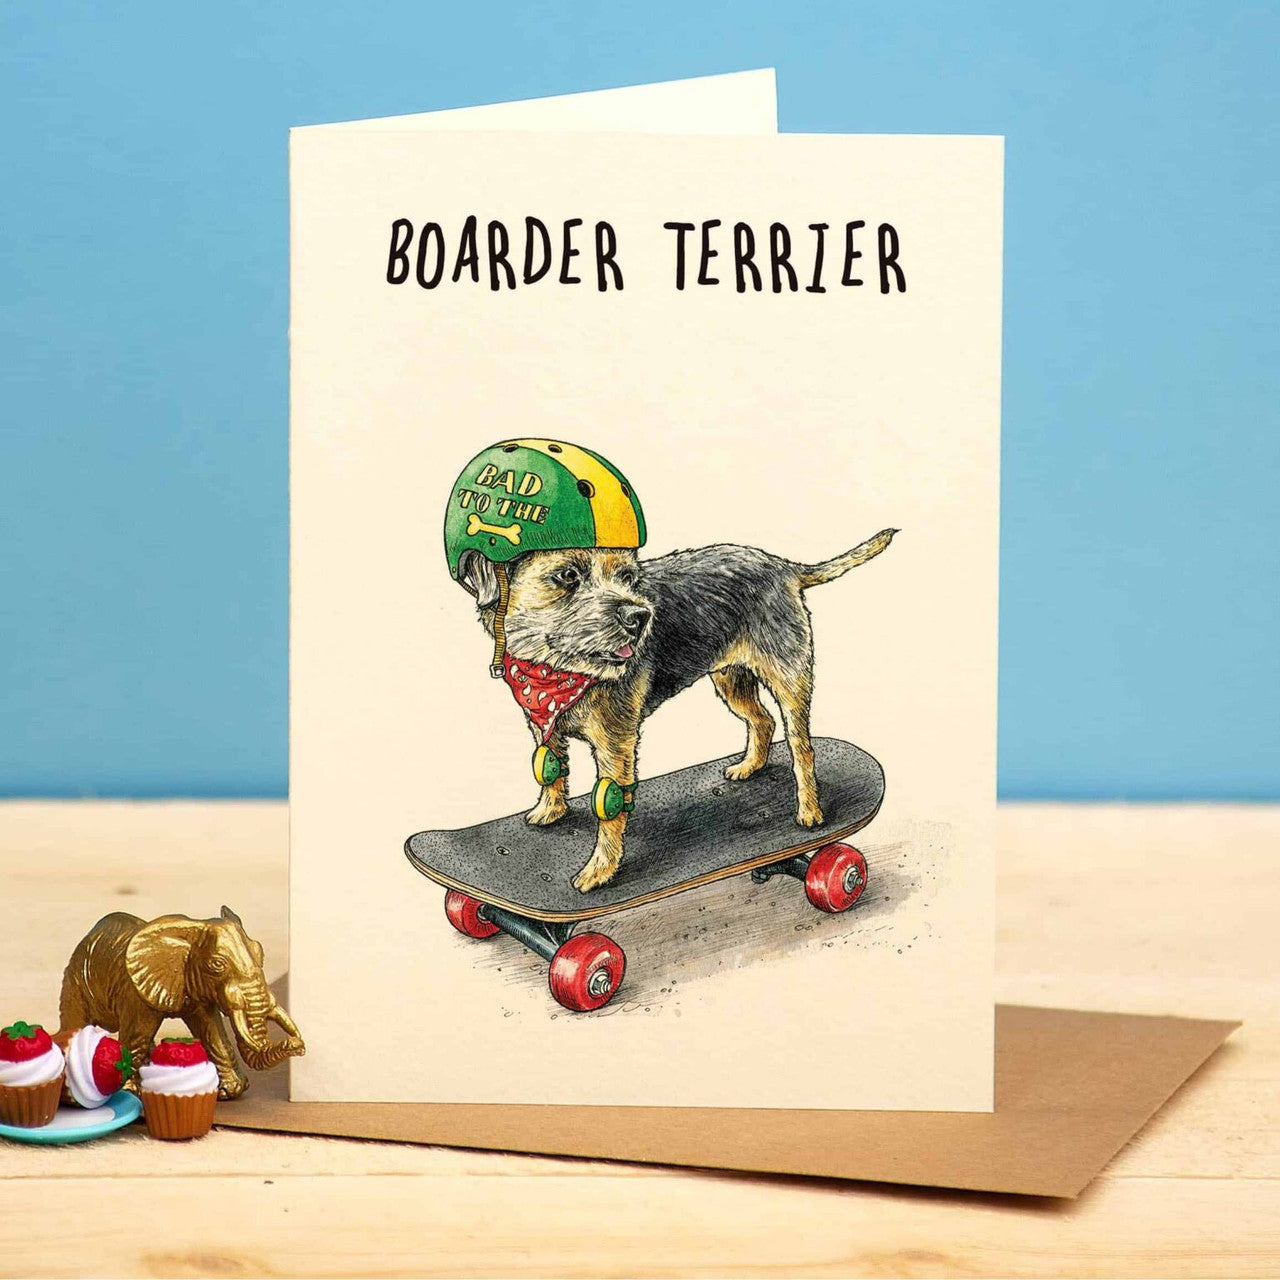 Boarder Terrier Greetings Card by Bewilderbeest.